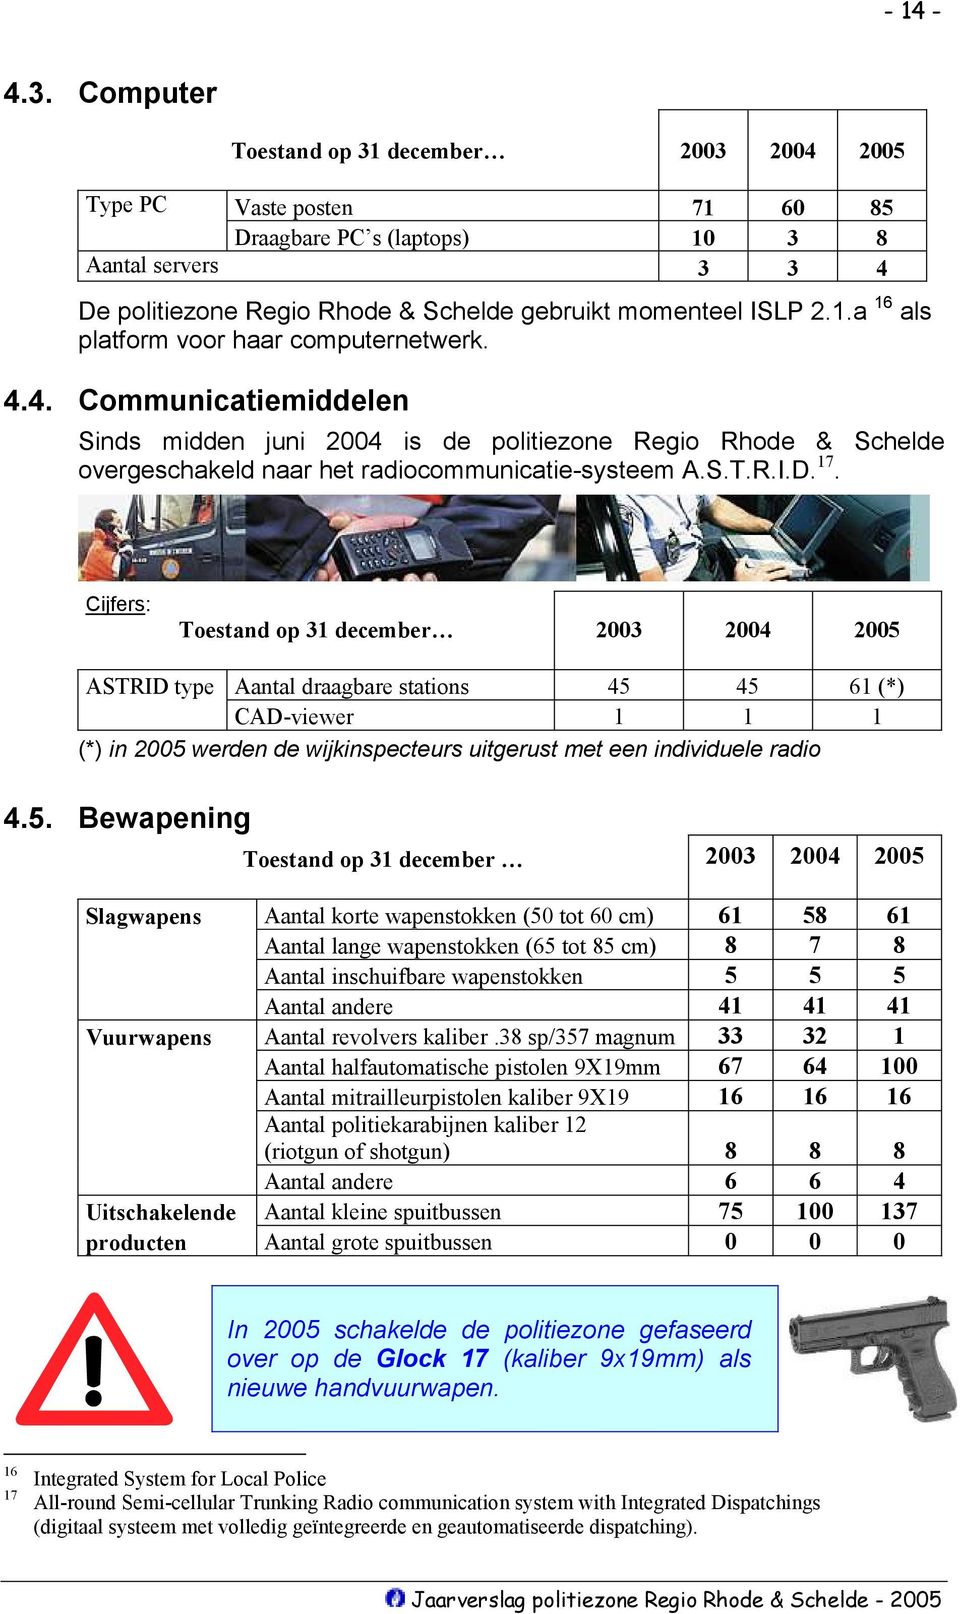 4.4. Communicatiemiddelen Sinds midden juni 2004 is de politiezone Regio Rhode & Schelde overgeschakeld naar het radiocommunicatie-systeem A.S.T.R.I.D. 17.